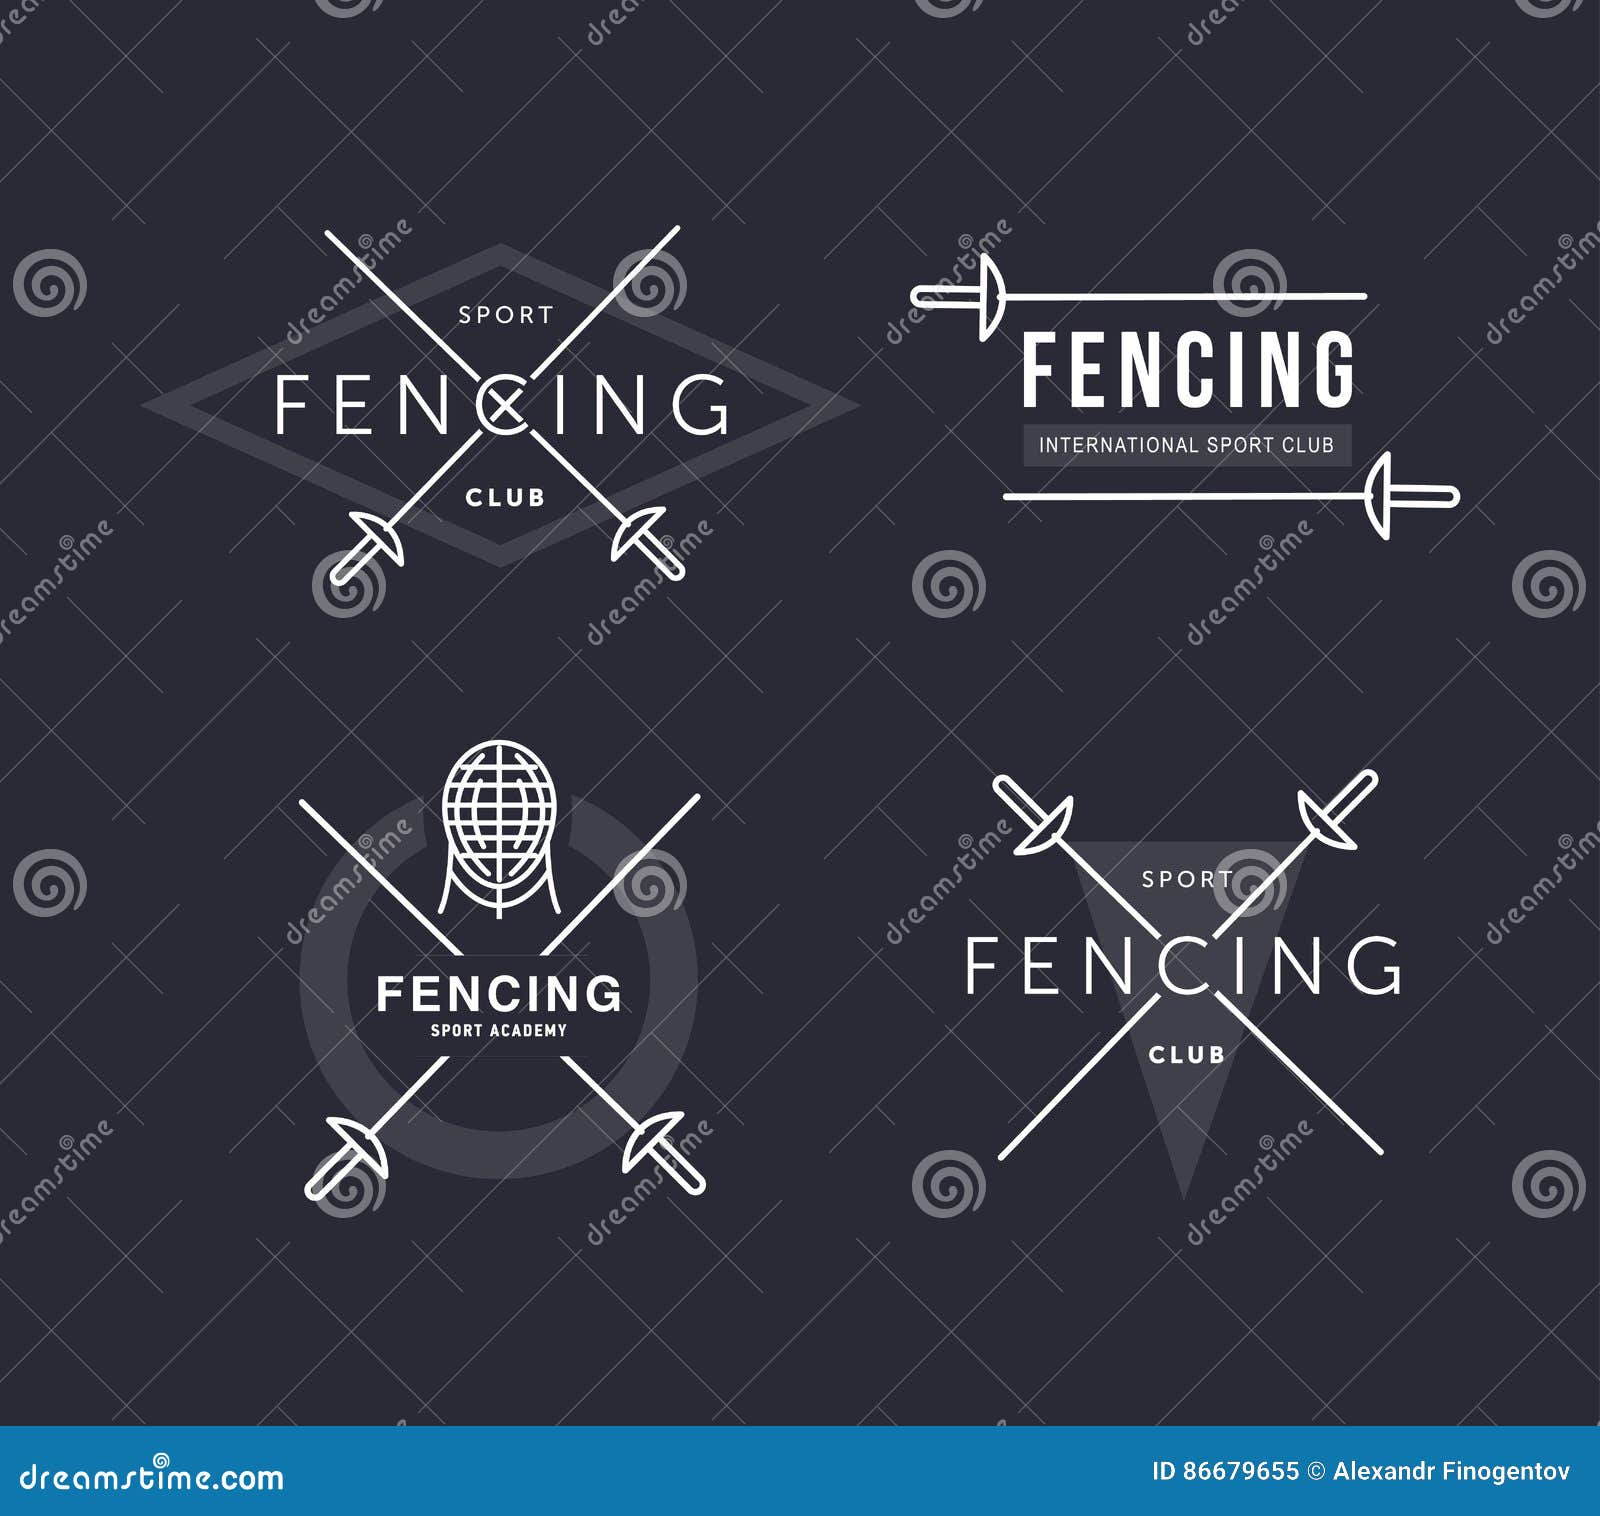 set of fencing sports  logo or badge. emblem s. fencing equipment - rapier, foil, mask. sport academy.